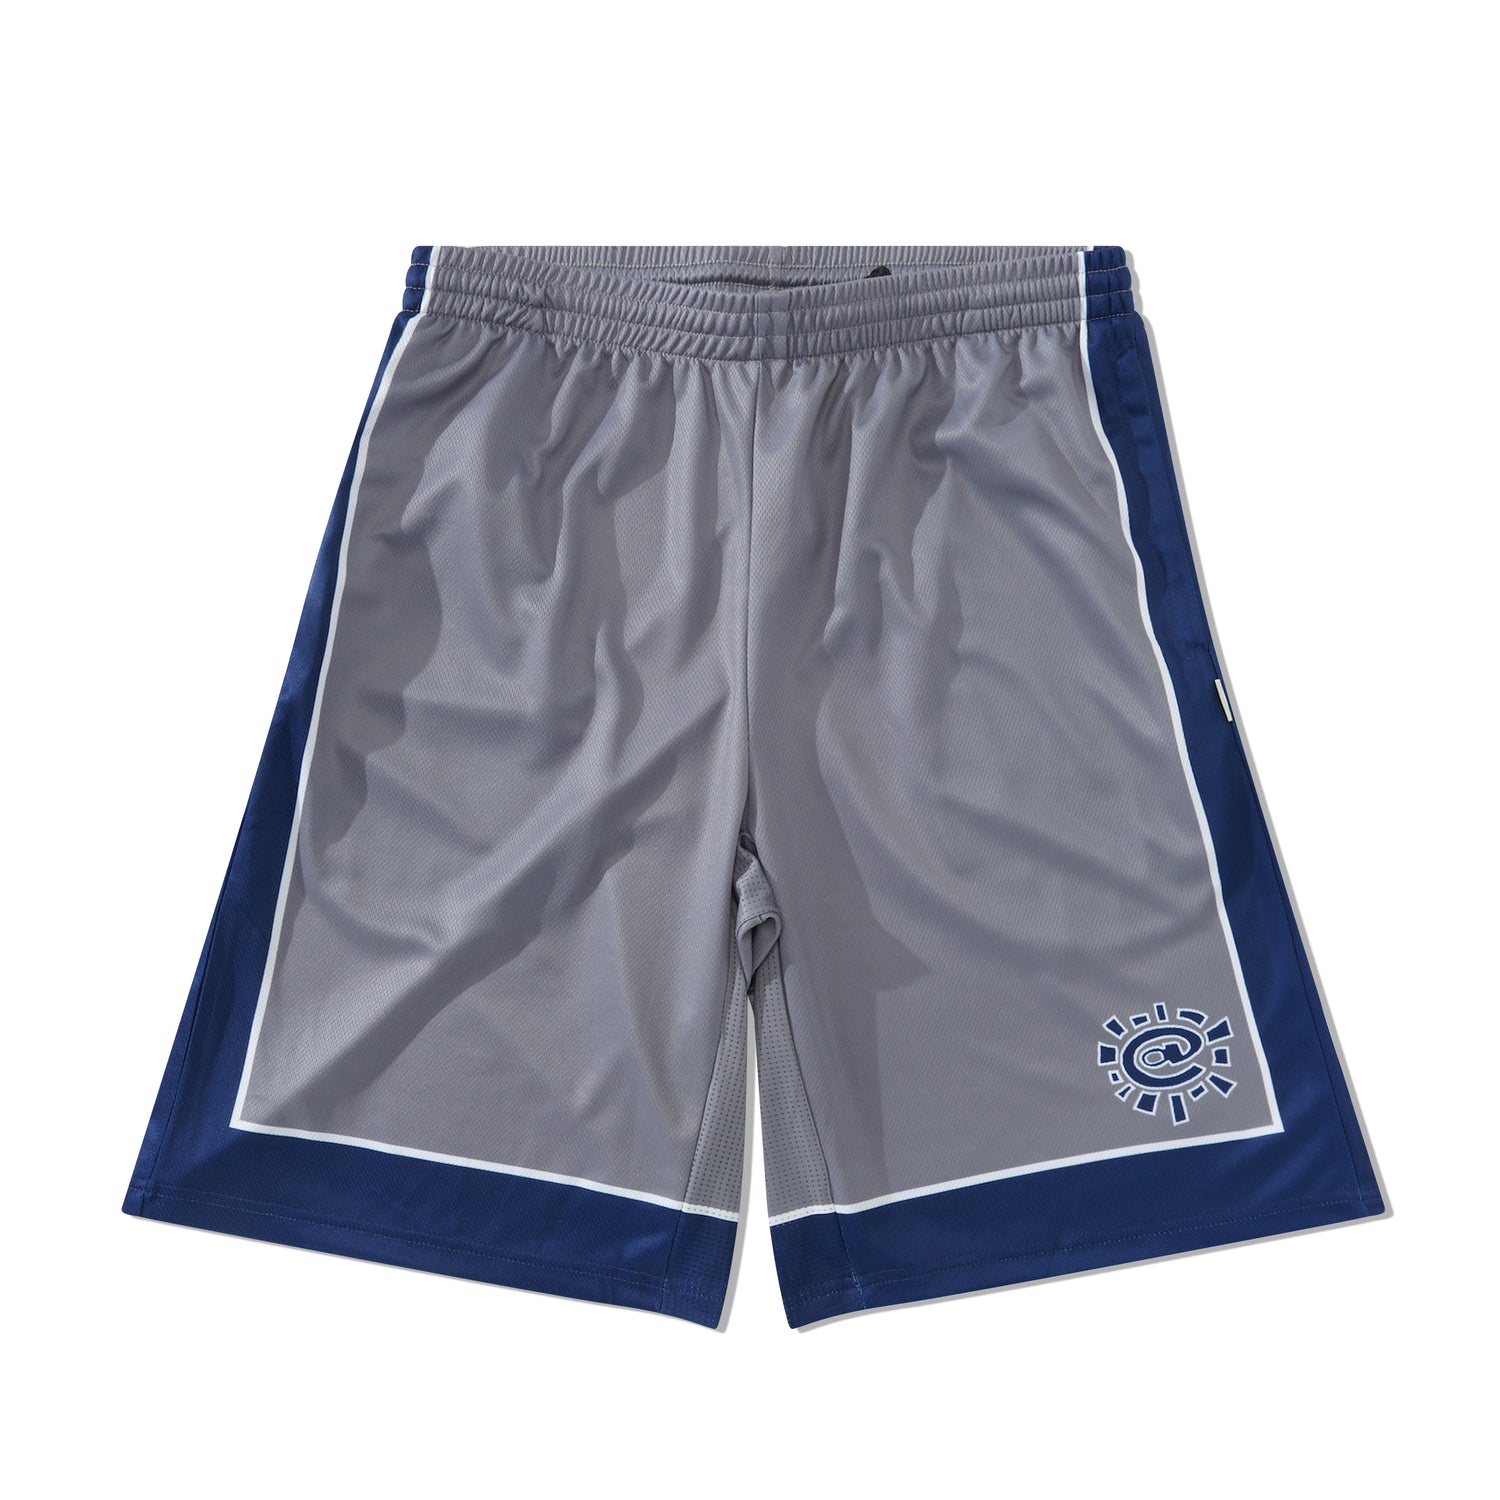 Court Shorts, Grey / Navy